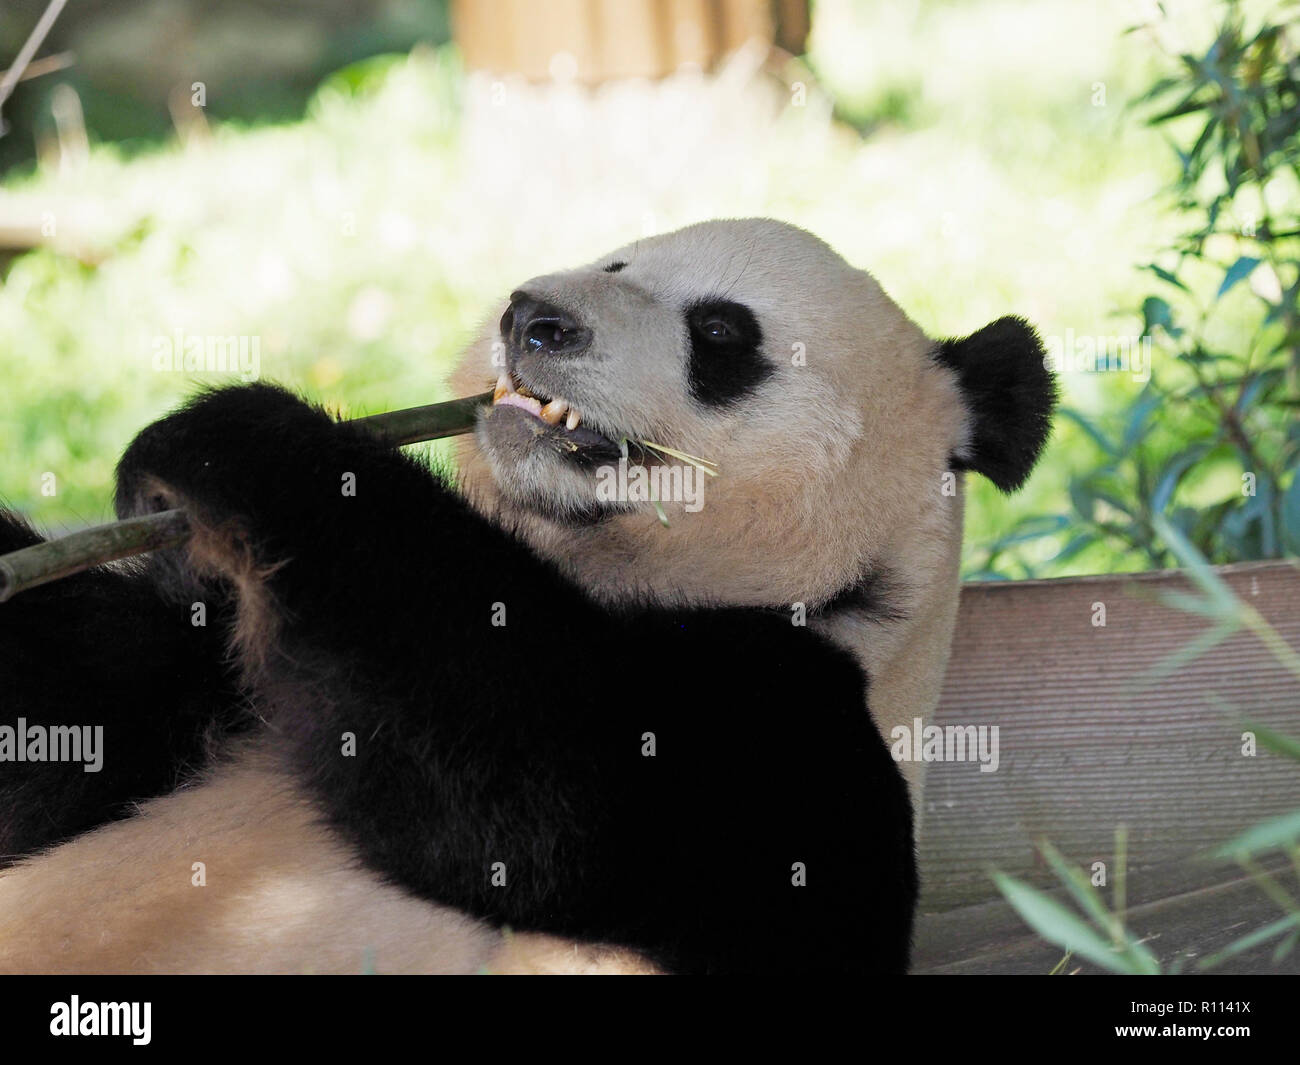 Ours panda géant couché en mangeant du bambou, du zoo de RHENEN, aux Pays-Bas. Ours Panda sont très rares dans les zoos en dehors de la Chine, du fait de leur di Banque D'Images